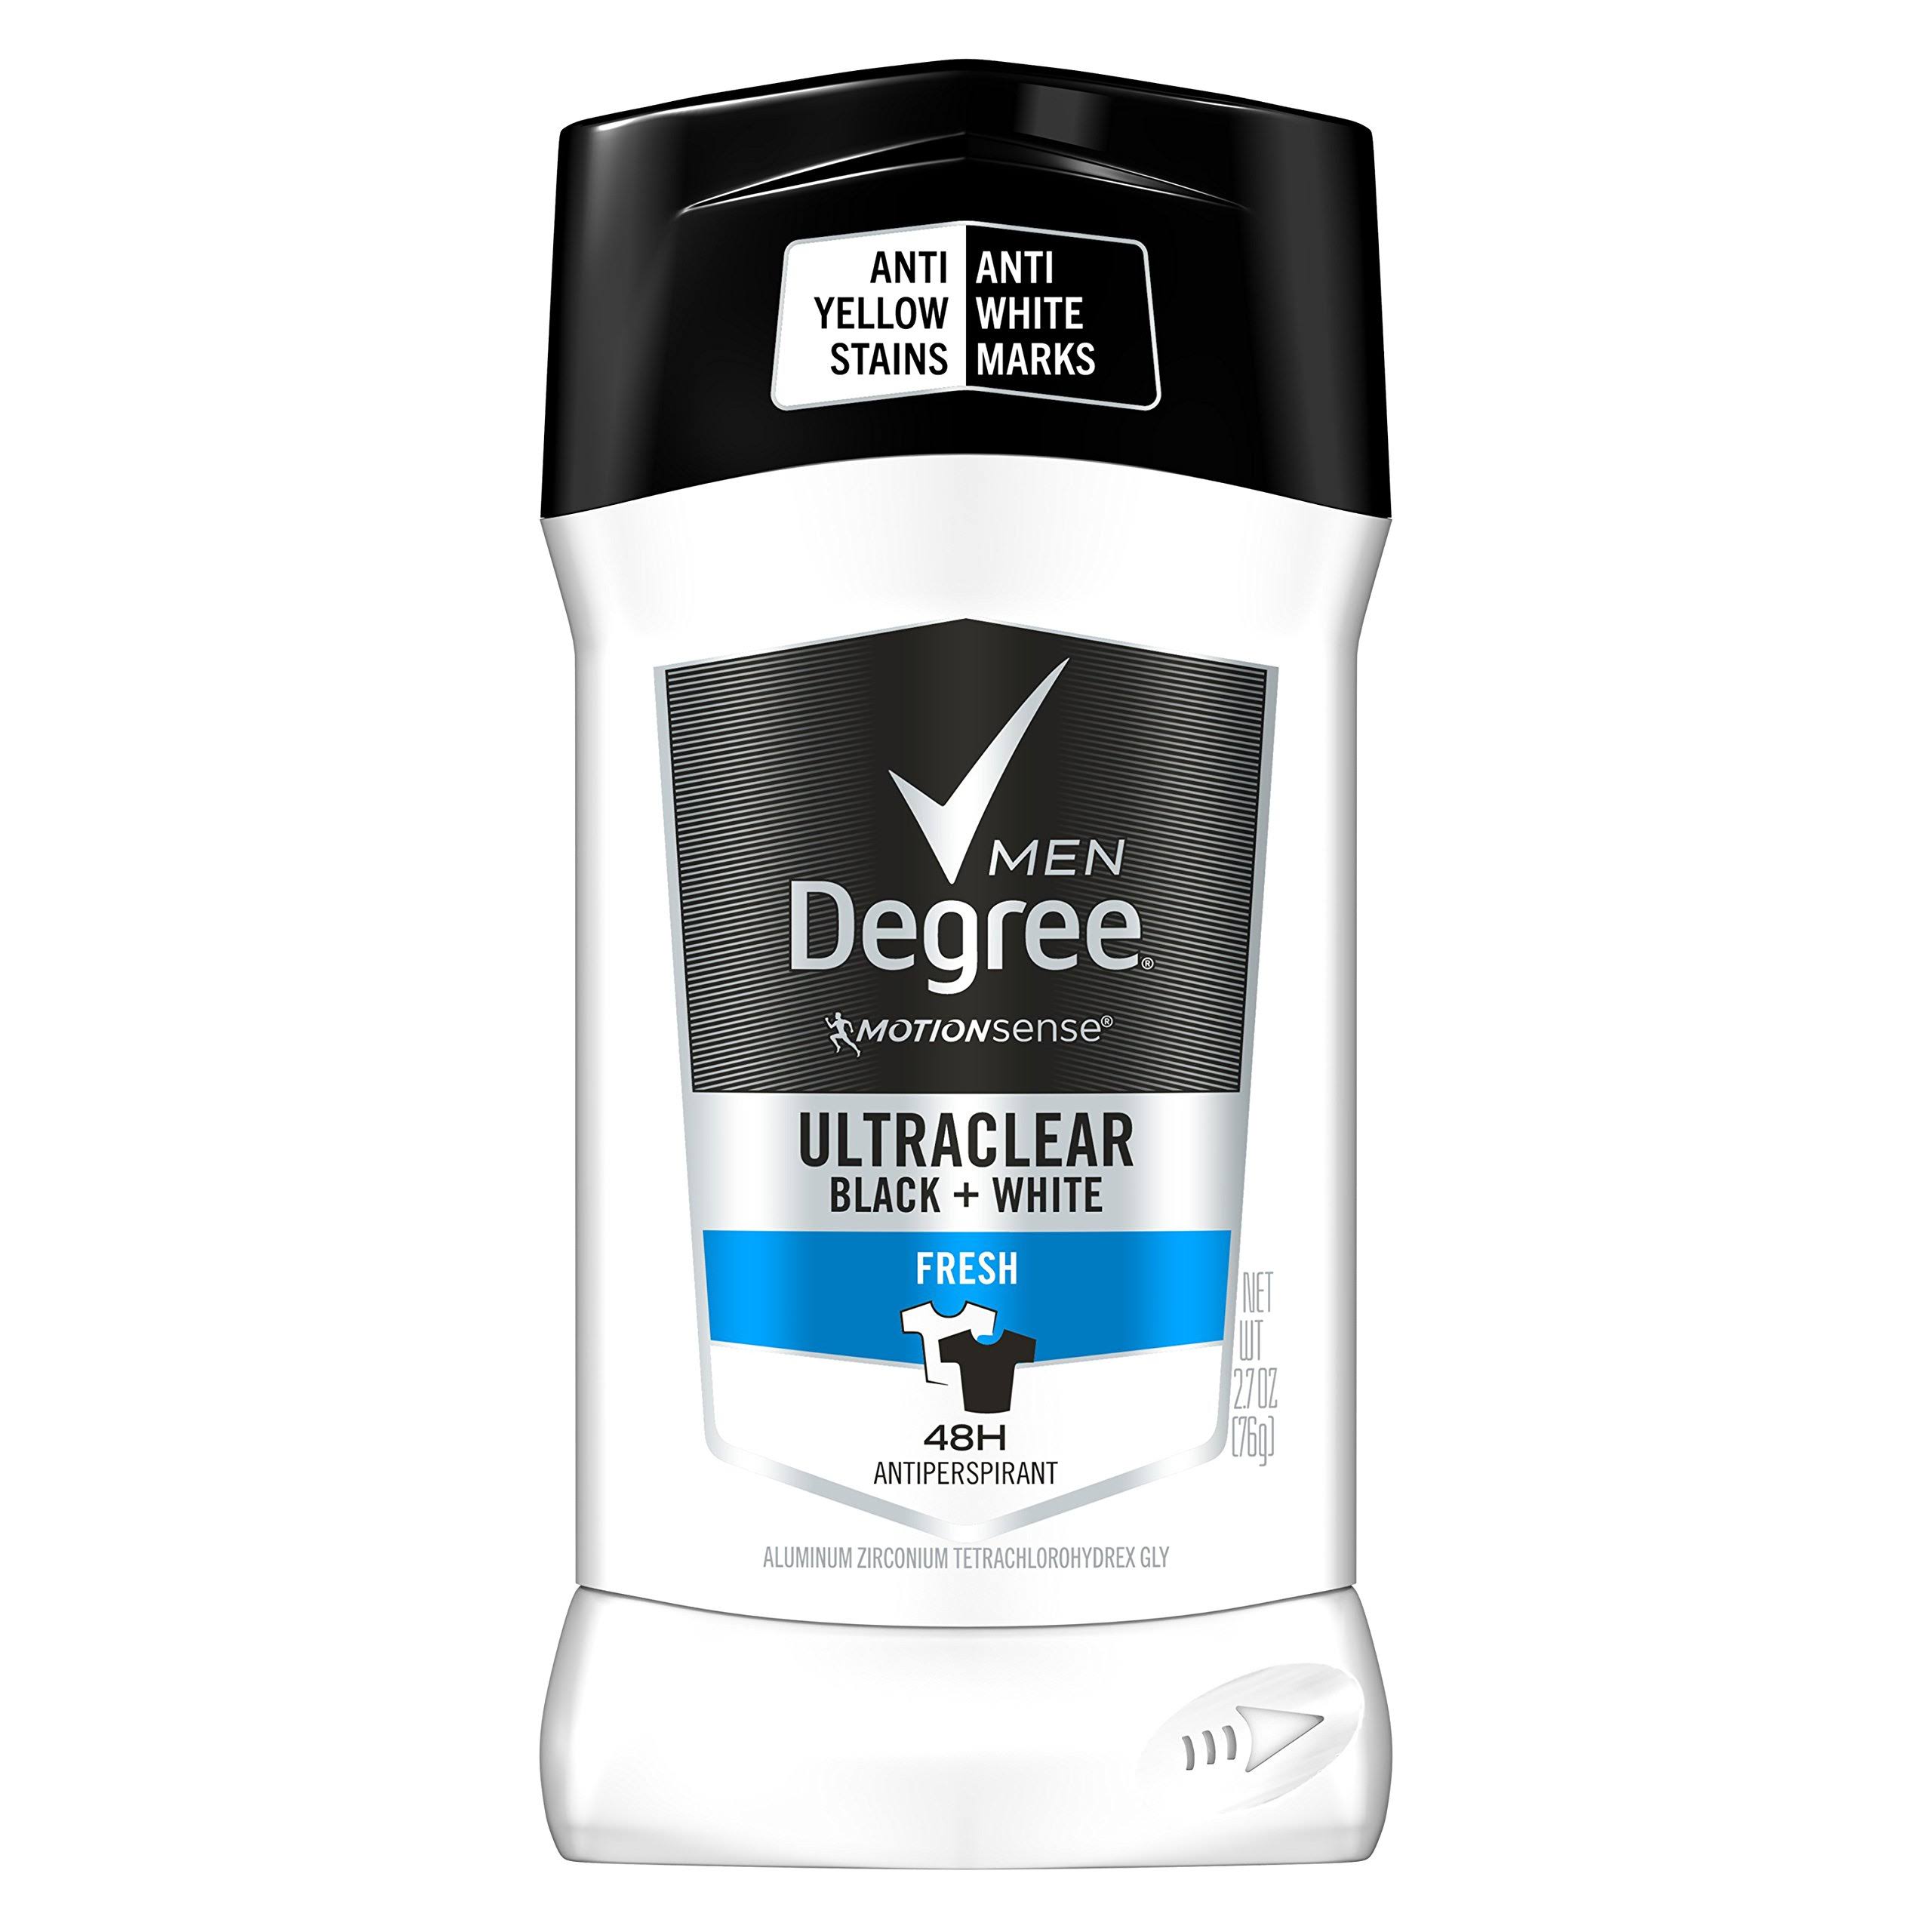 Degree Men Motion Sense Ultraclear Black + White Fresh 48h Antiperspirant